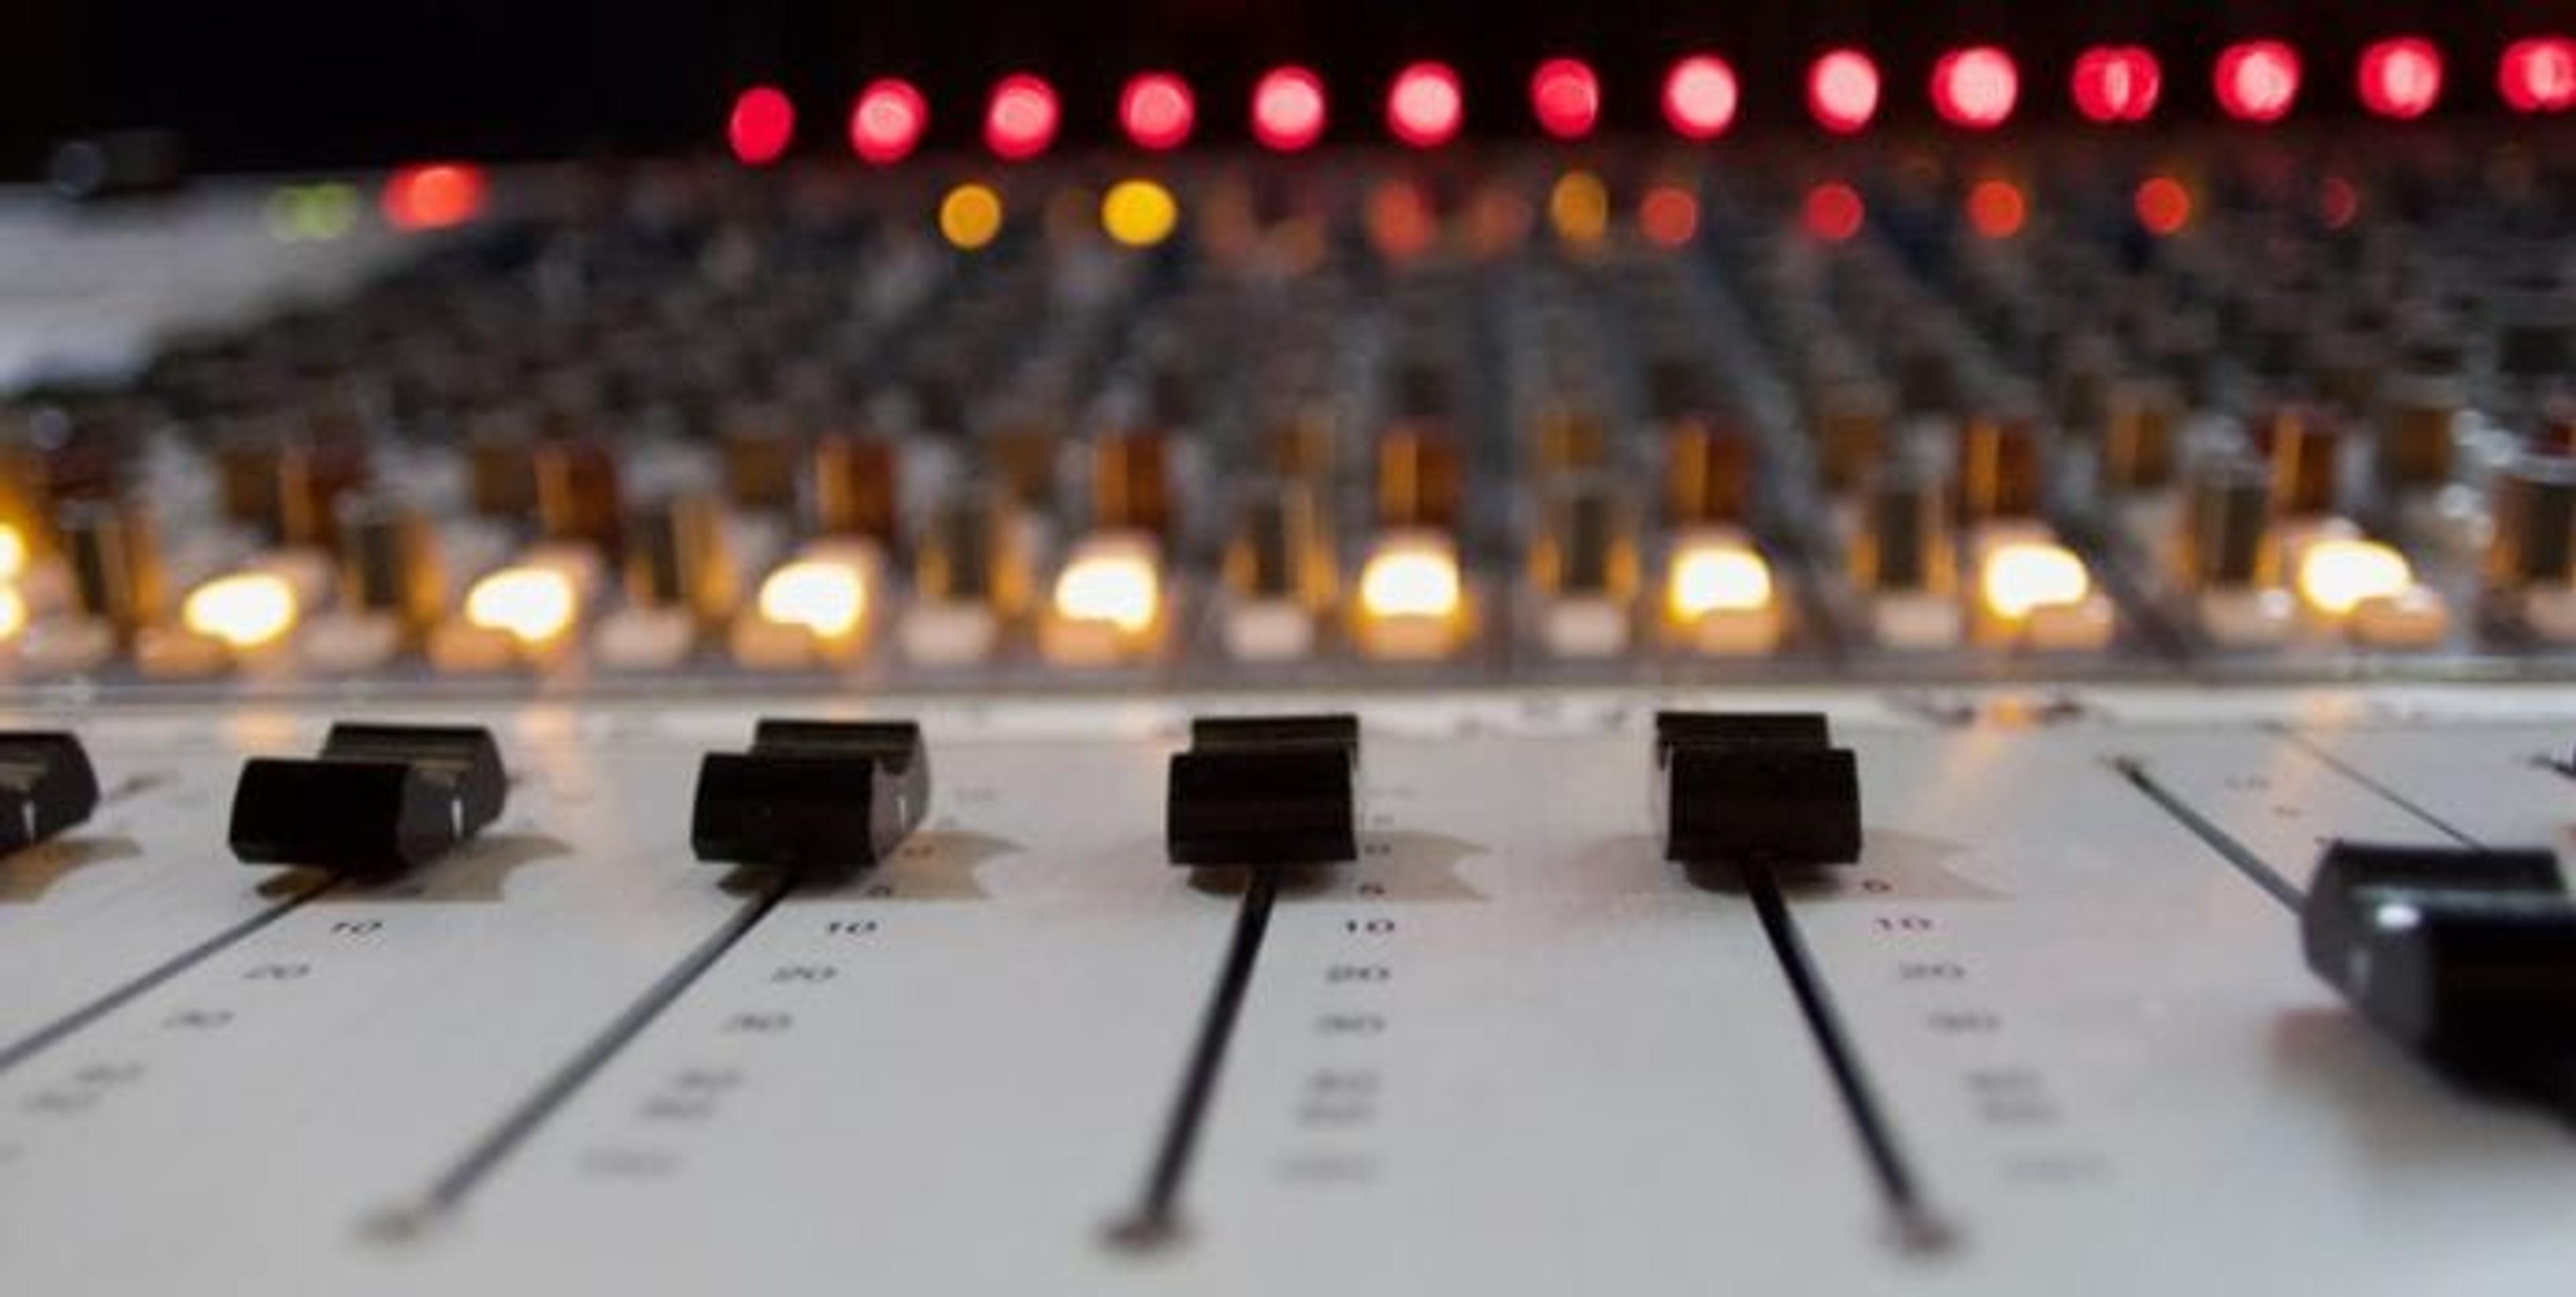 A Healthier Michigan Podcast - Audio Mixer Board